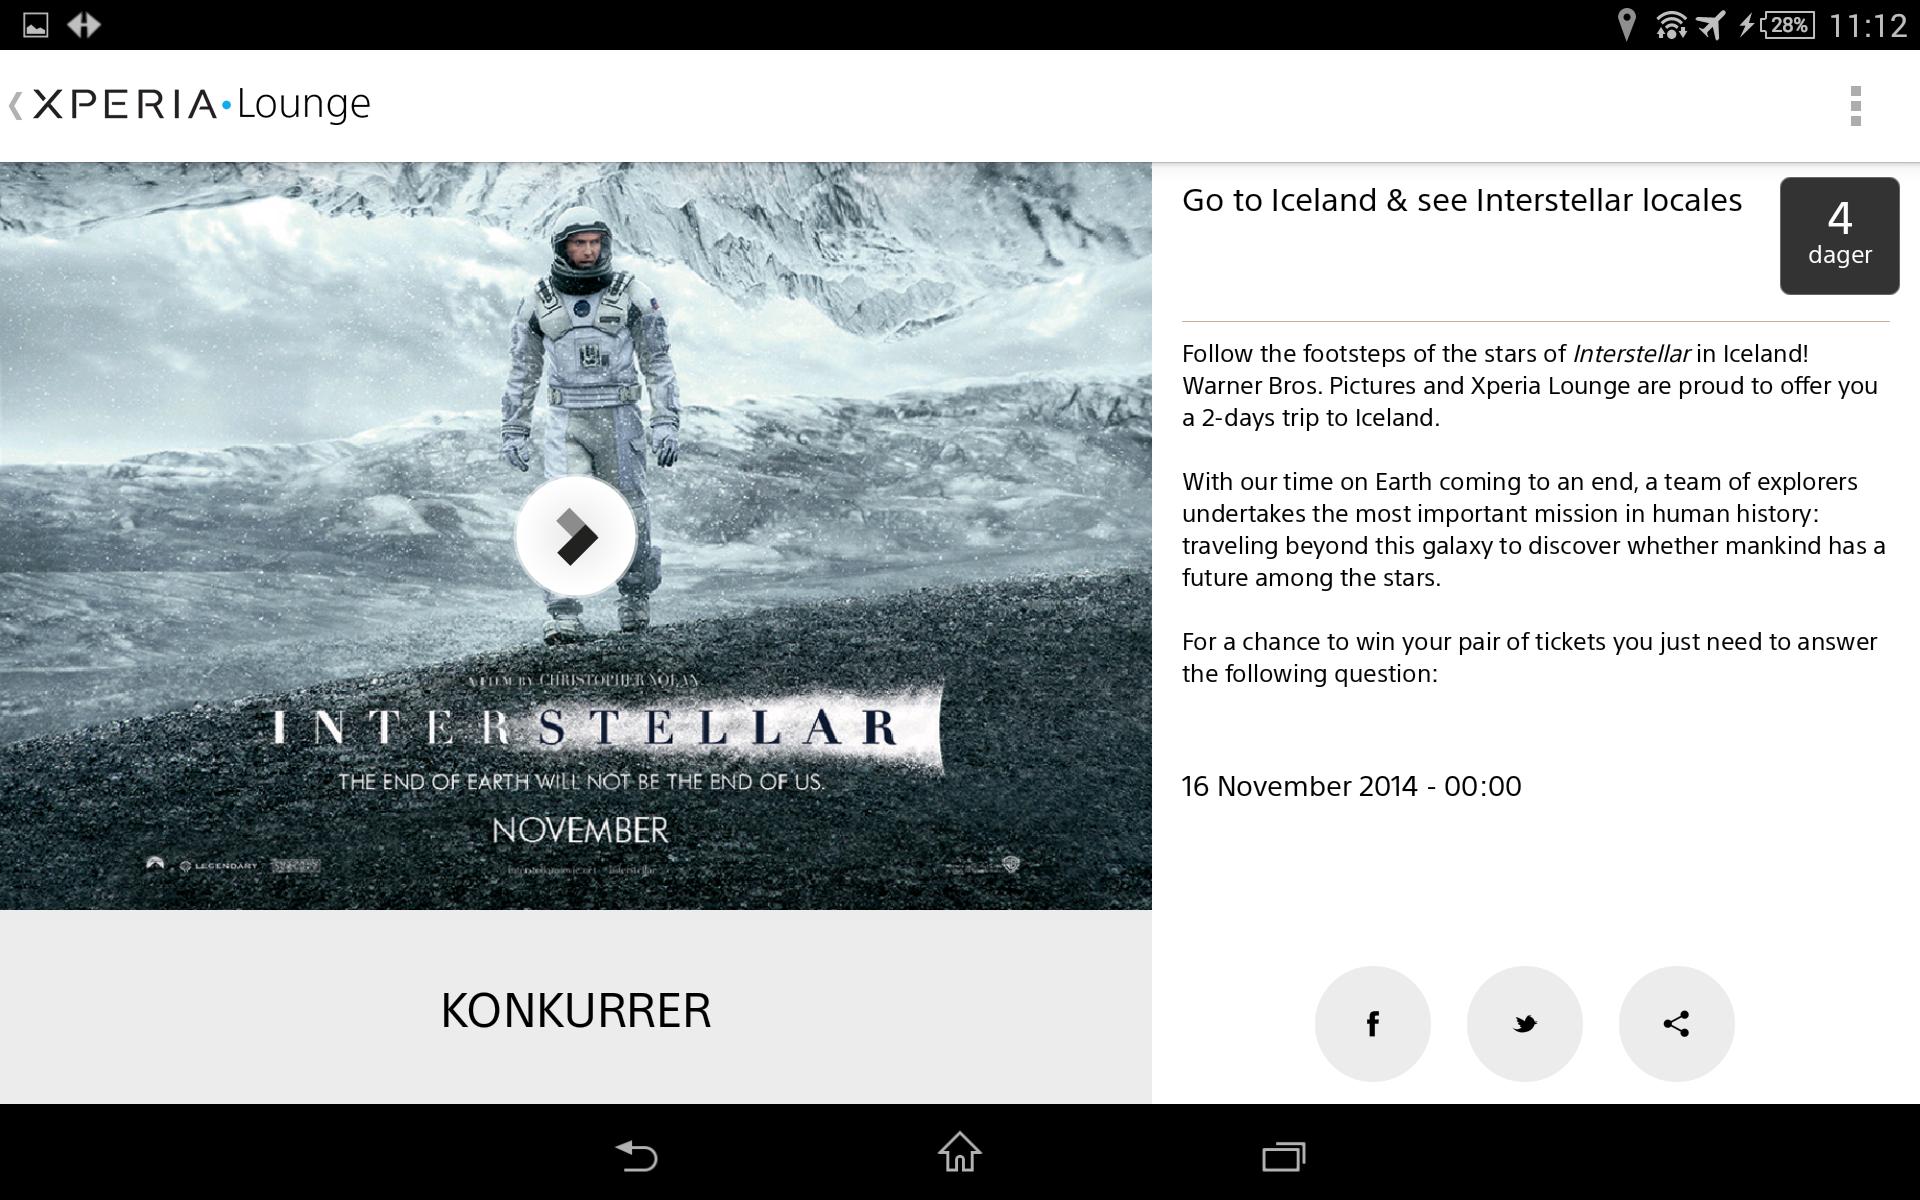 Åpne Xperia Lounge, svar på følgende spørsmål, og du kan vinne todagerstur til Island for å se stedene der filmen Interstellar er filmet. Hvilket spørsmål, Sony?